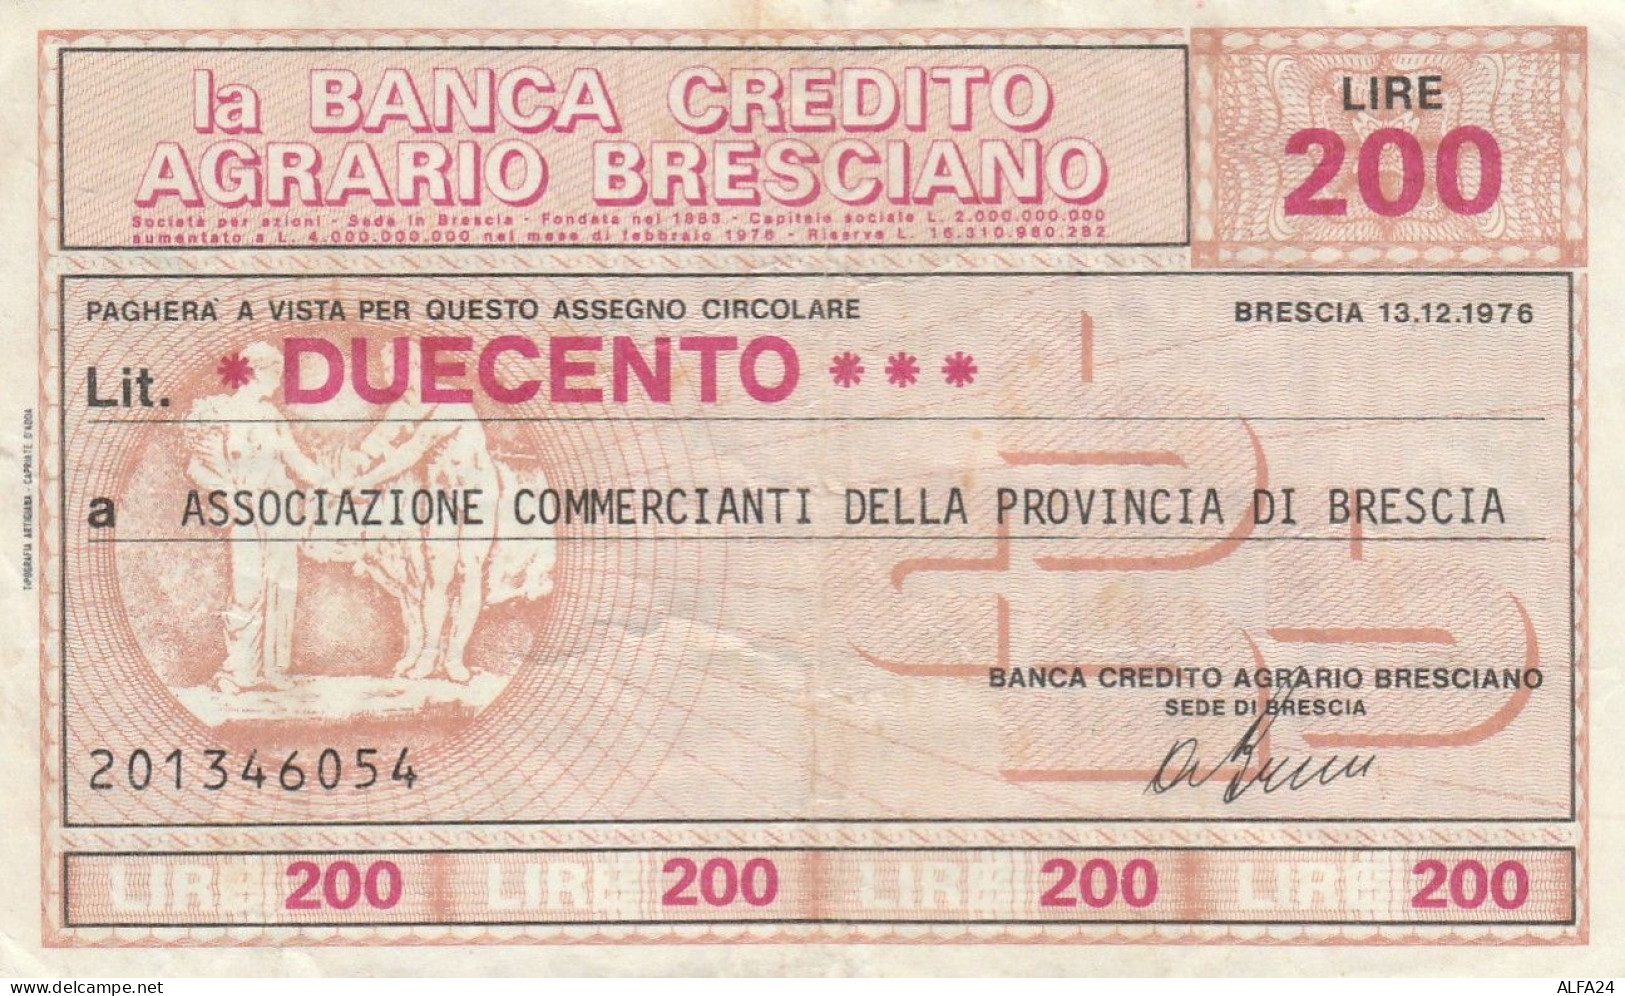 MINIASSEGNO BANCA CREDITO BS L.200 ASS COMM BS CIRCOLATO (RY5642 - [10] Checks And Mini-checks